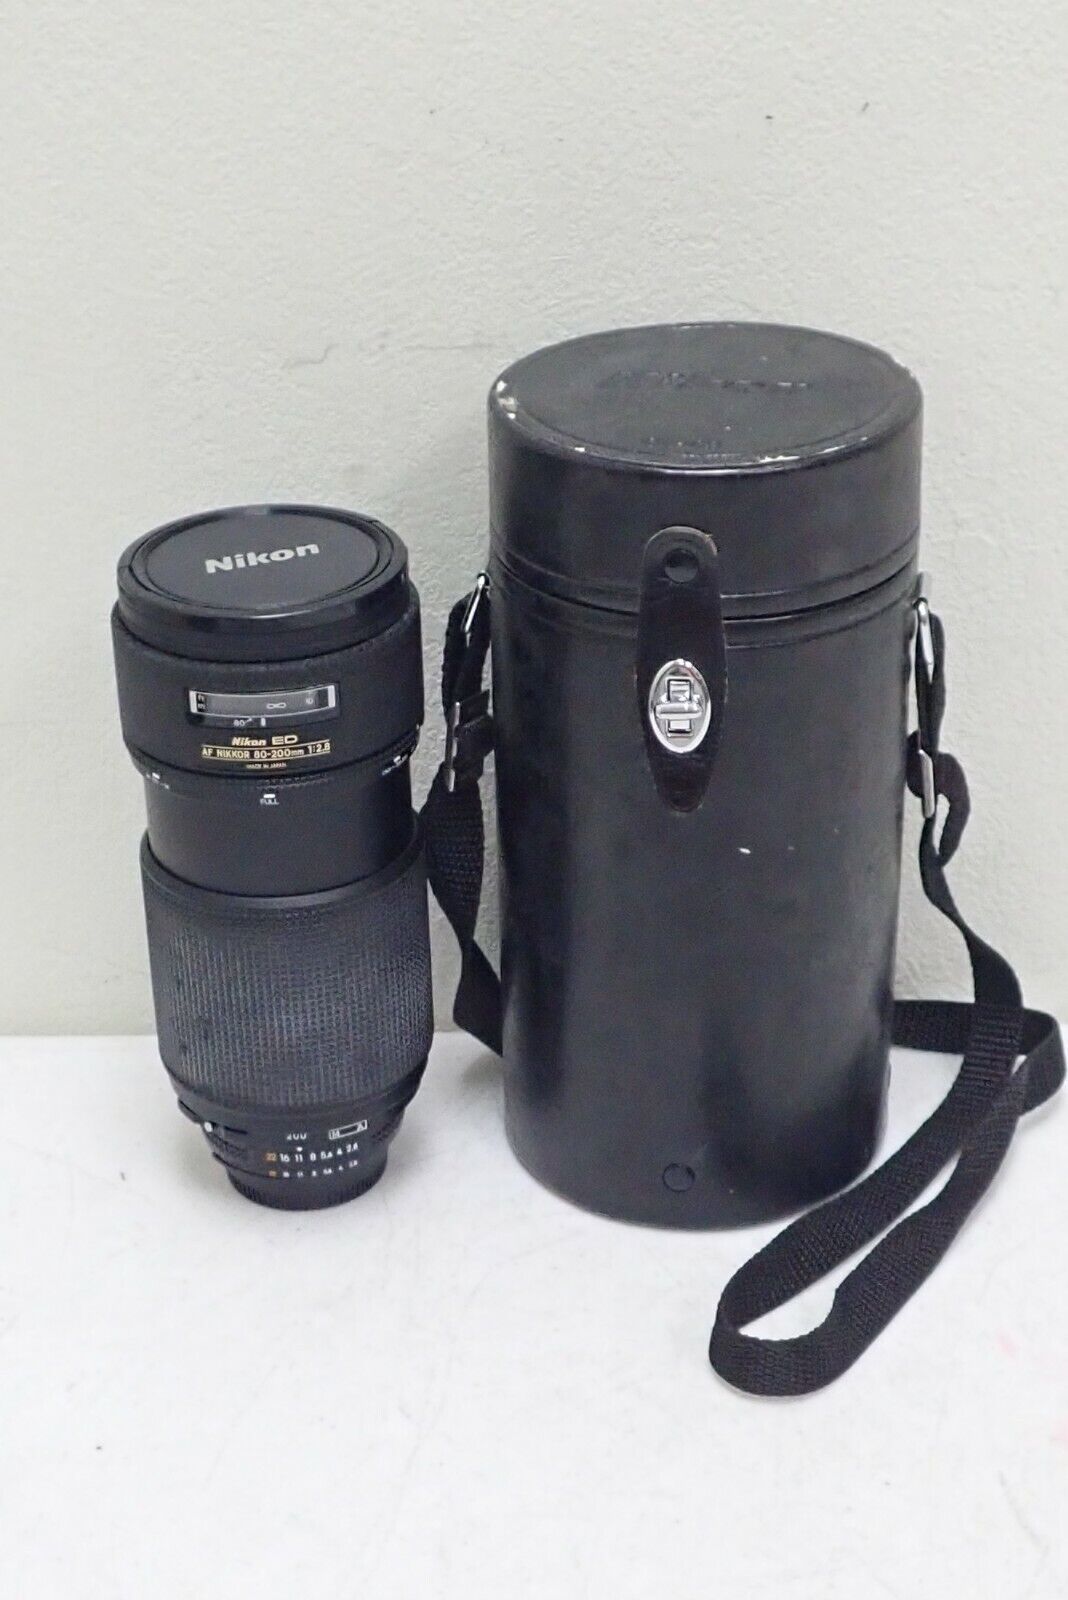 Nikon ED AF NIKKOR 80-200mm f/2.8 Lens with Nikon Case CL-43